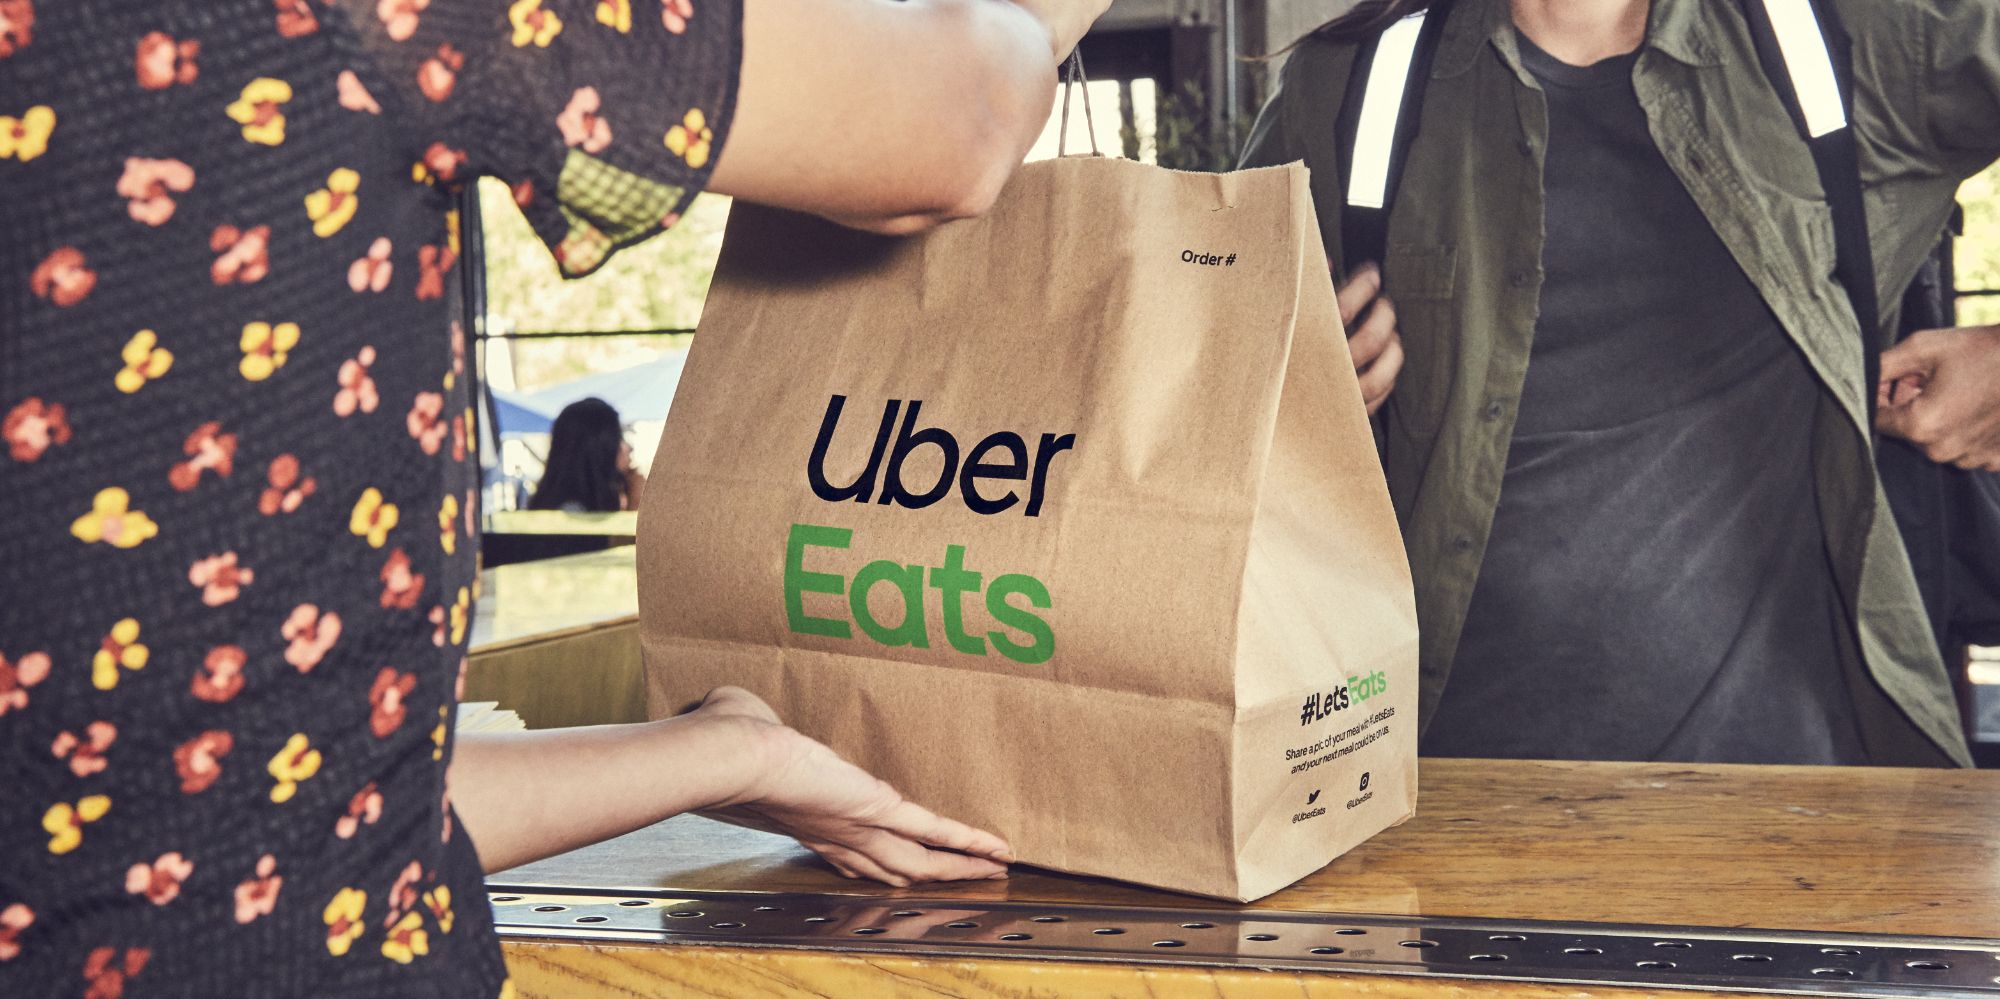 Uber Eats food delivery bag